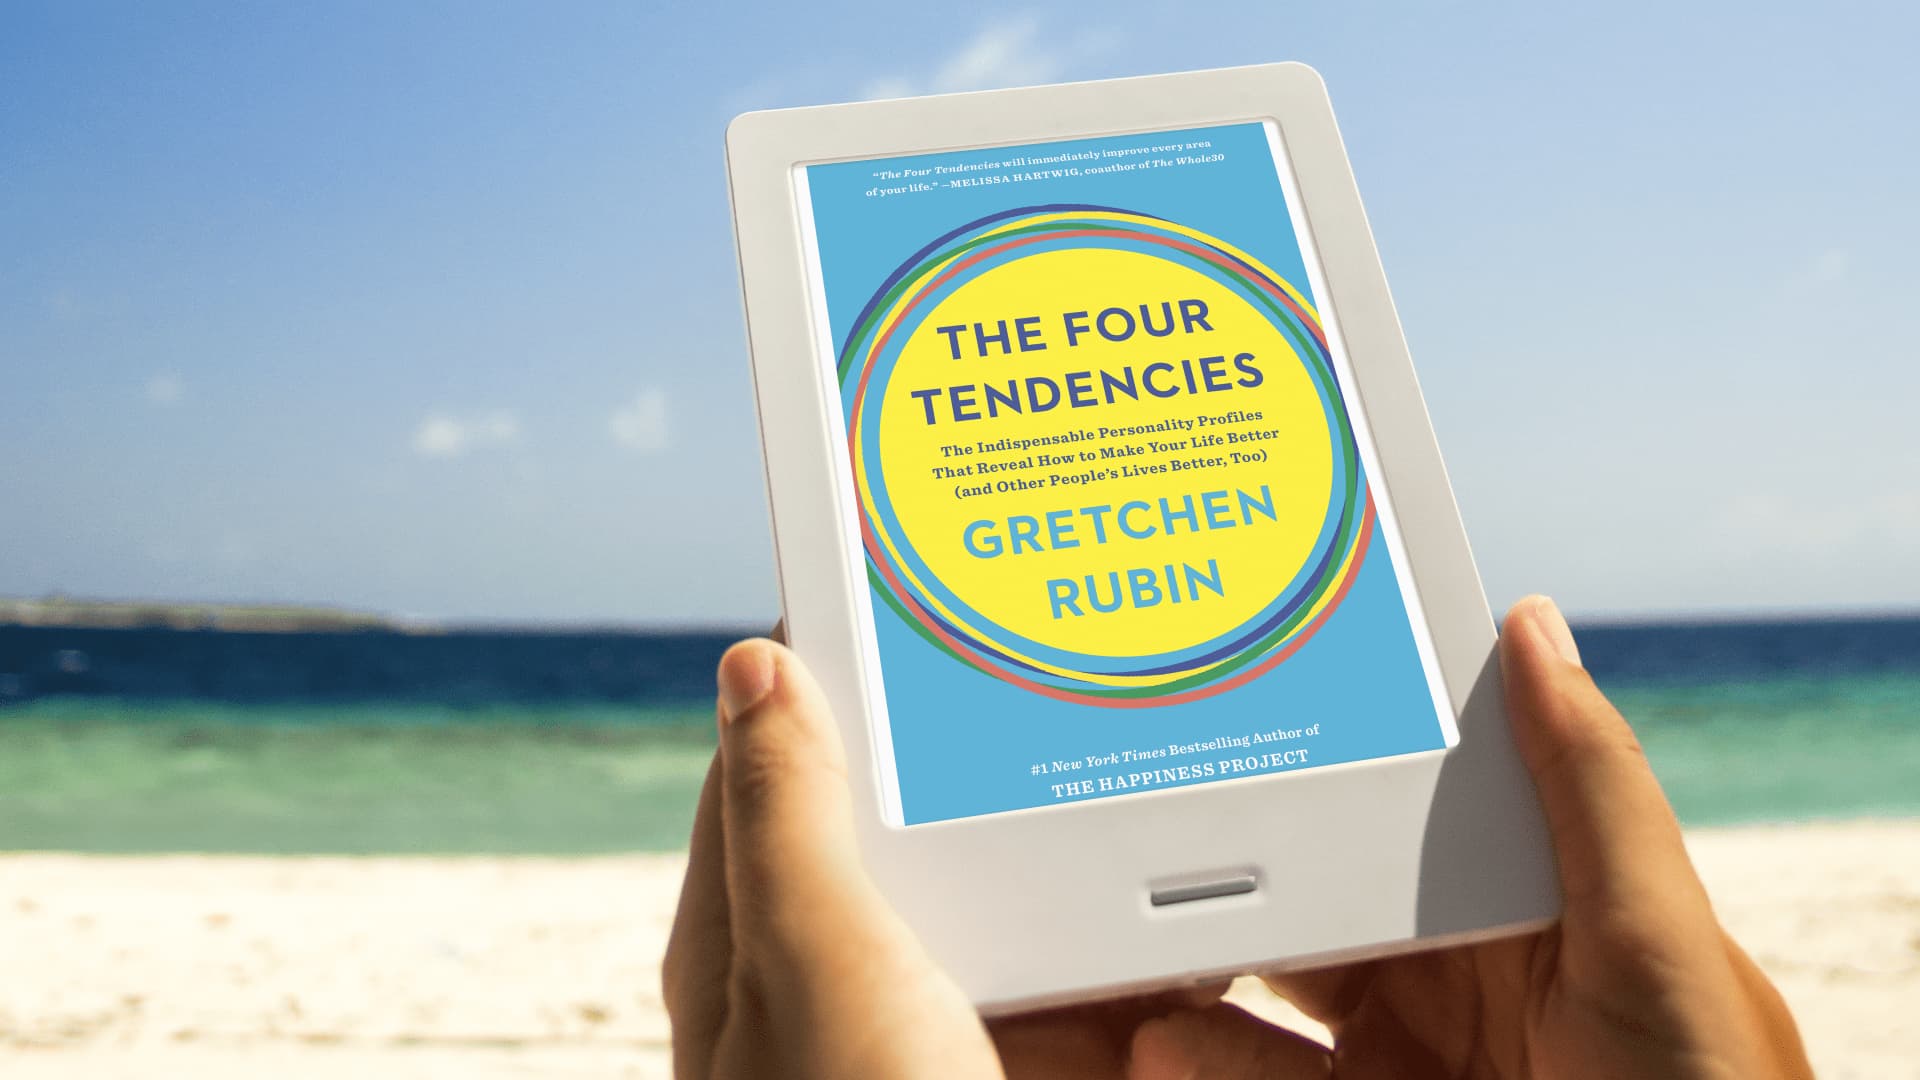 The Four Tendencies ebook on the beach